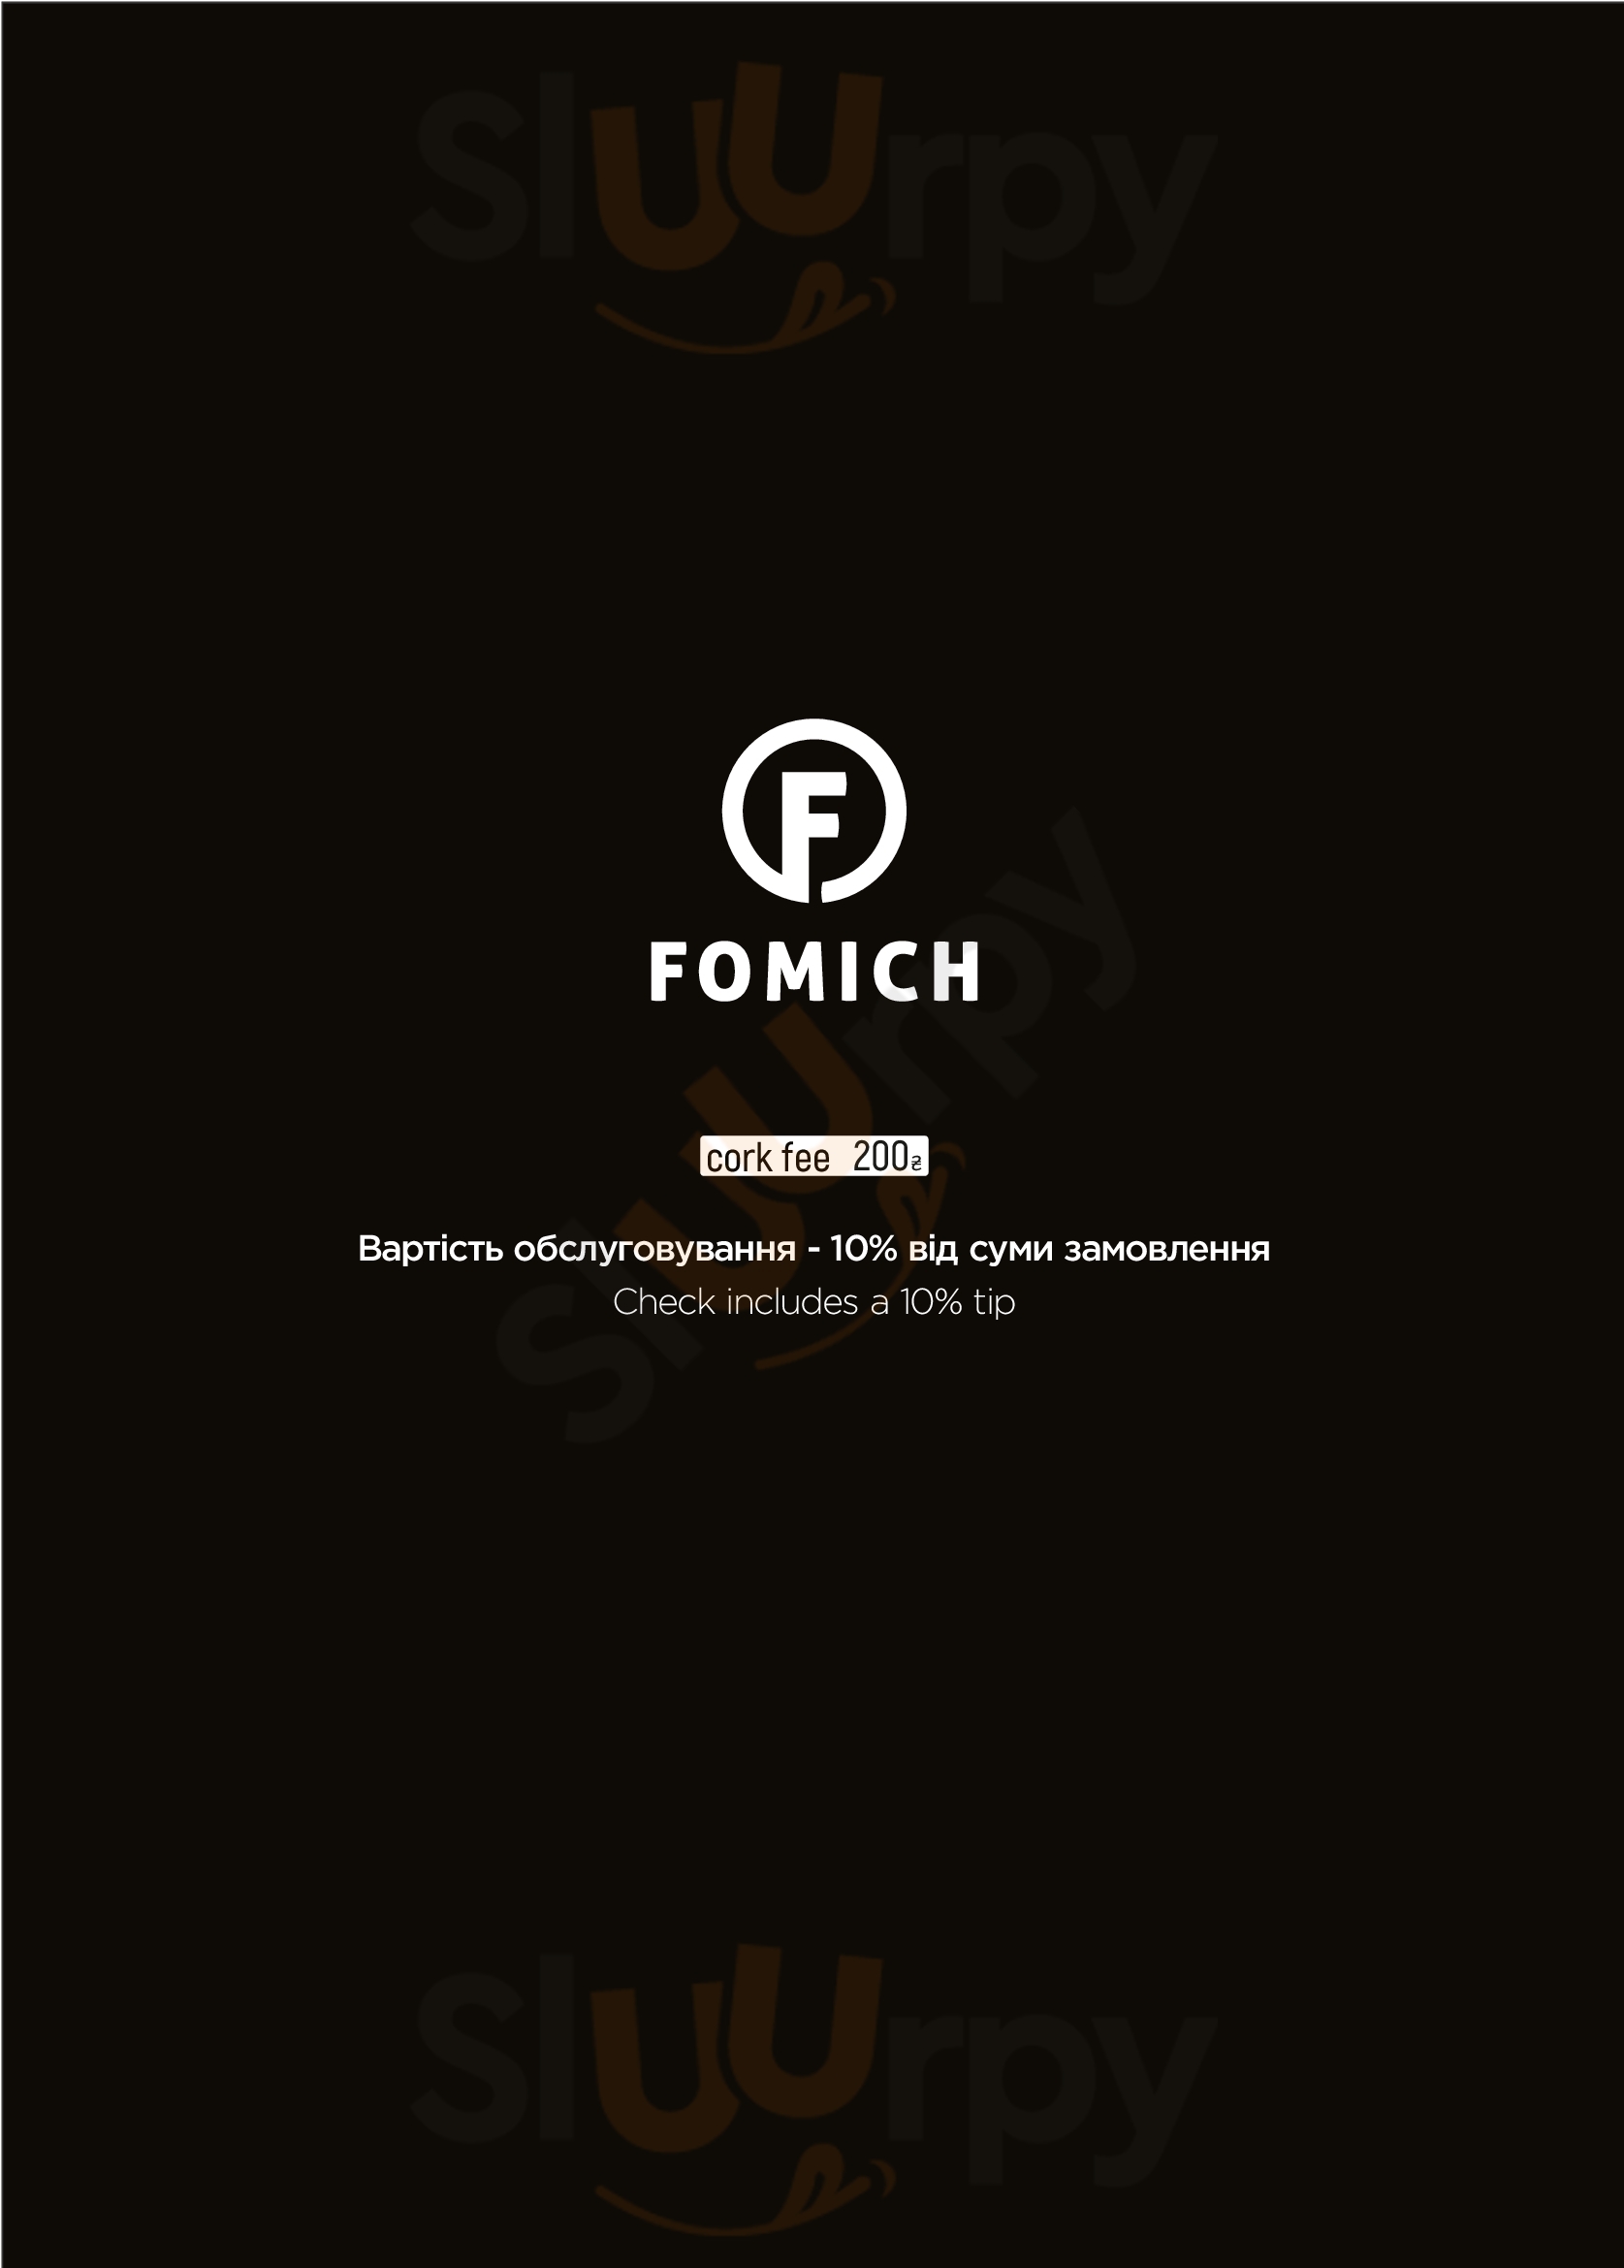 Fomich Restaurant Polyanytsya Menu - 1